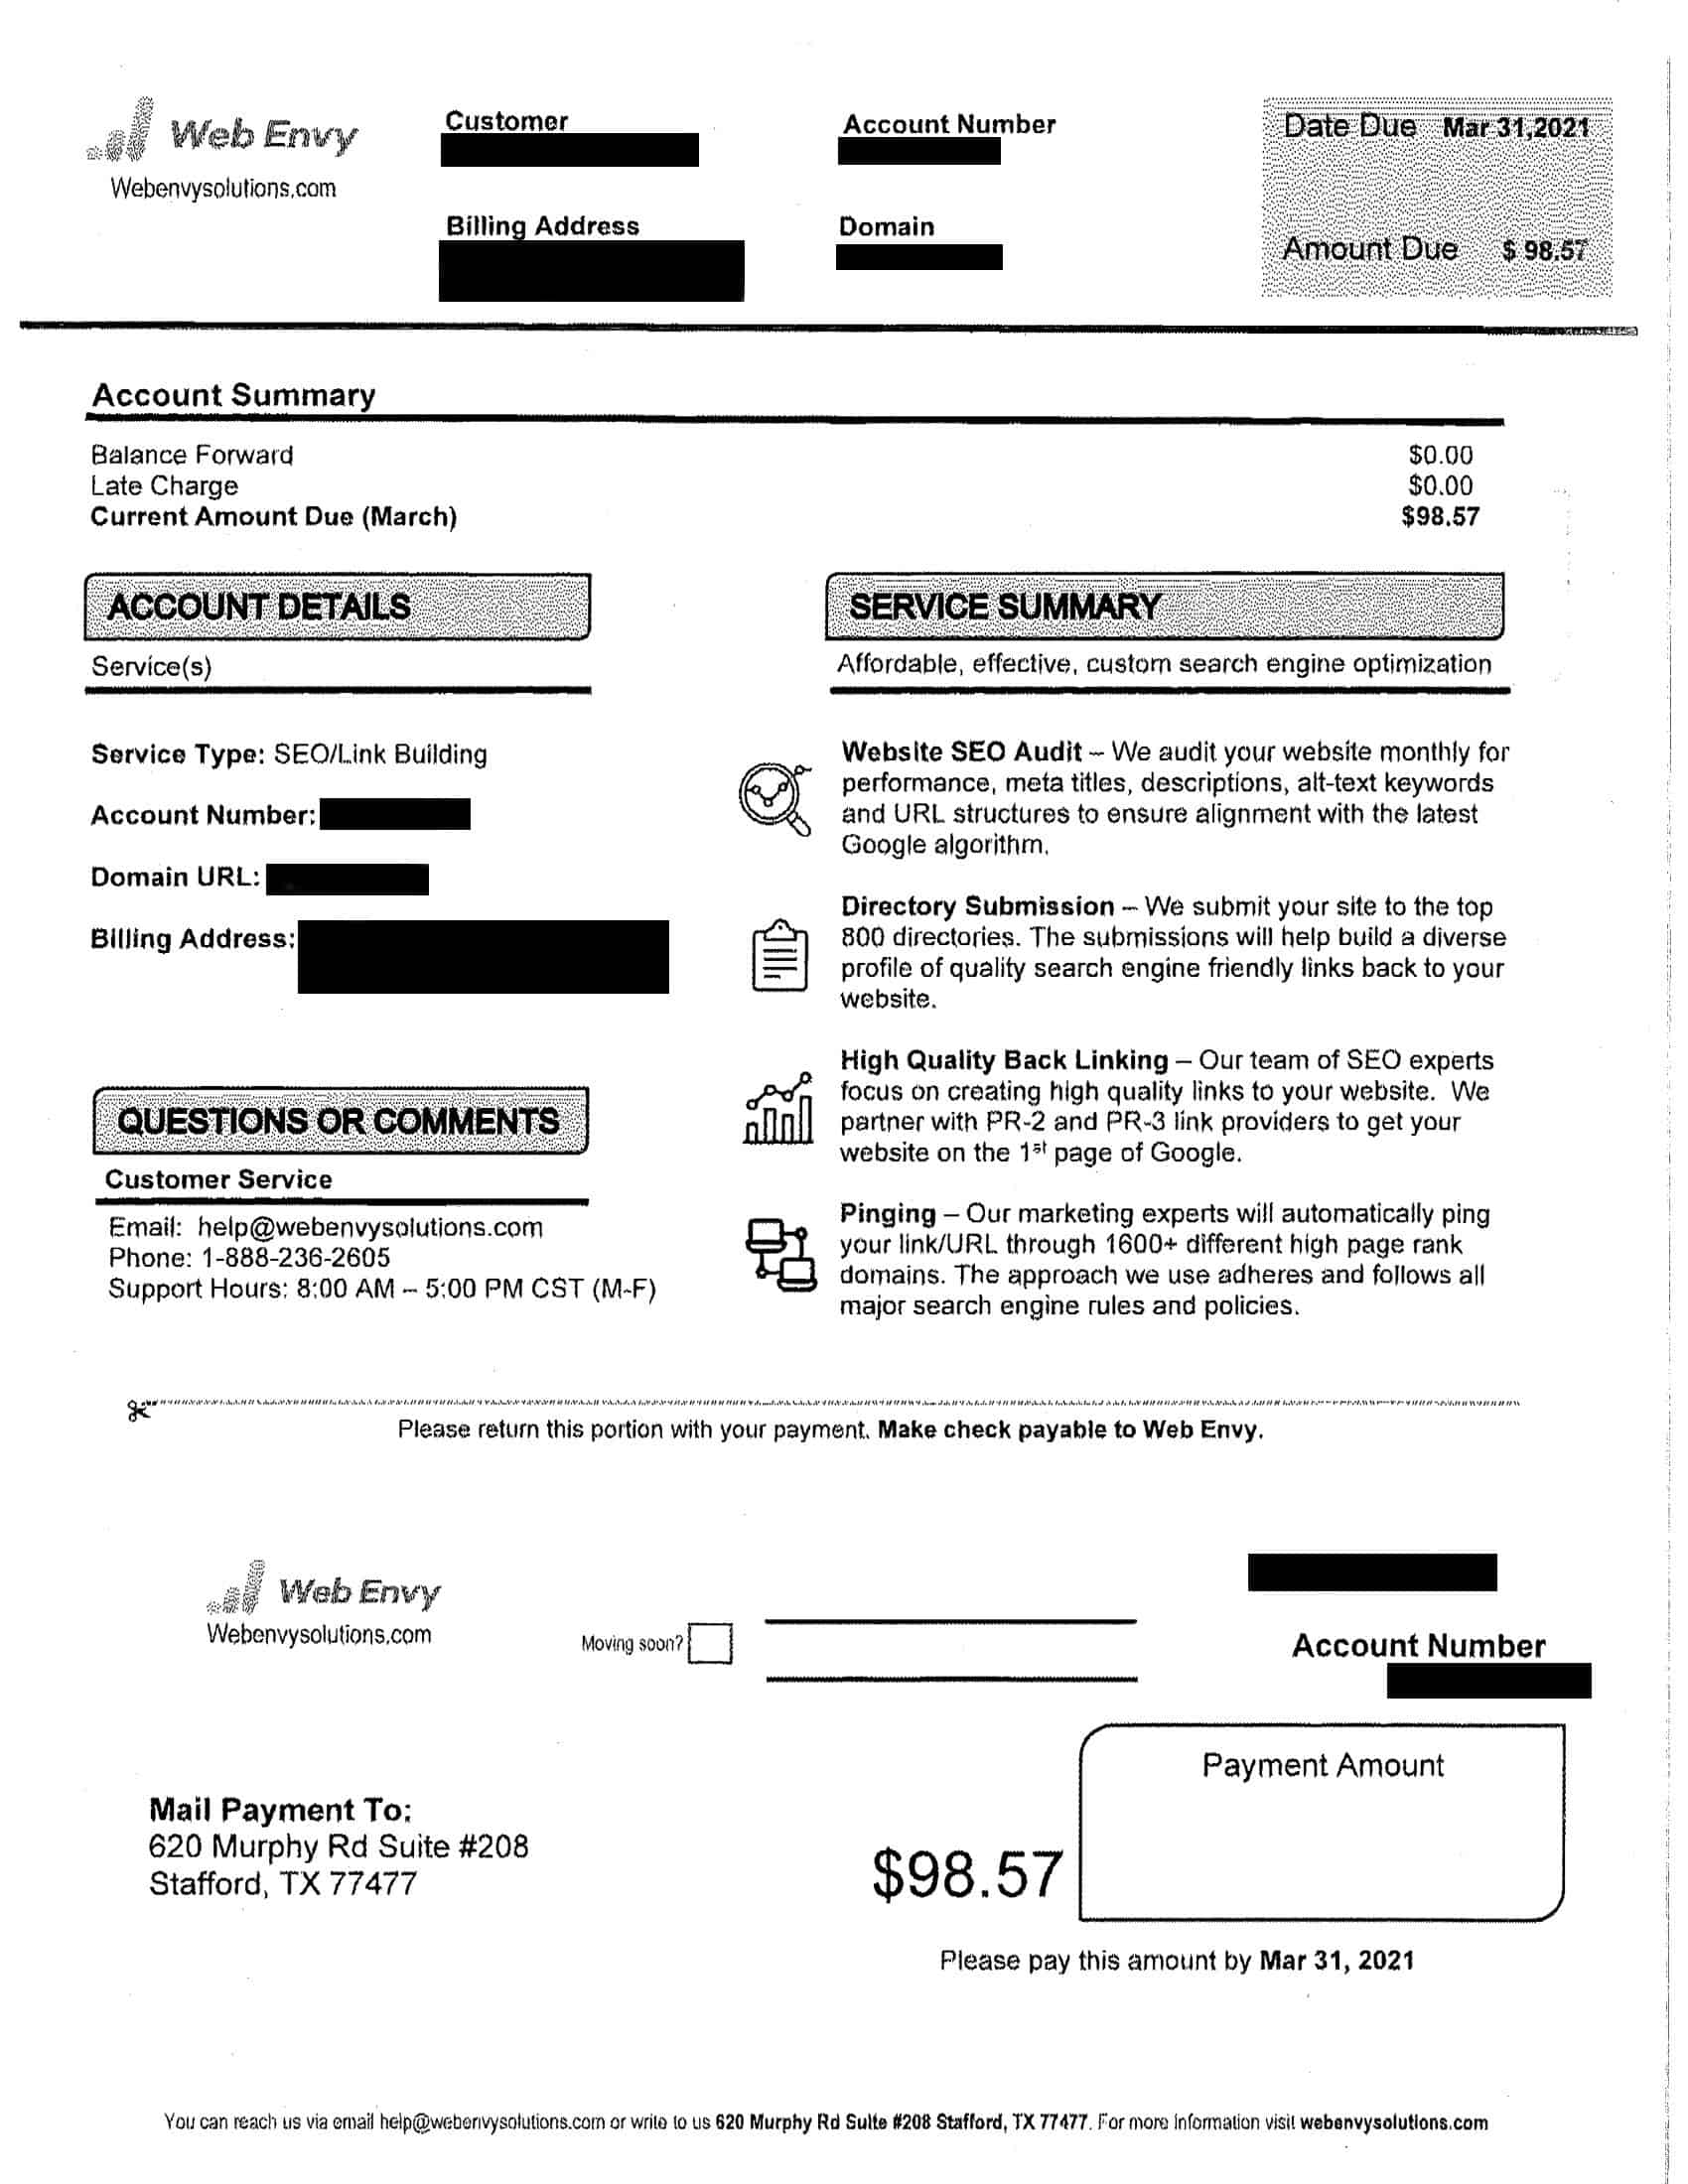 fake invoice from webenvysolutions.com